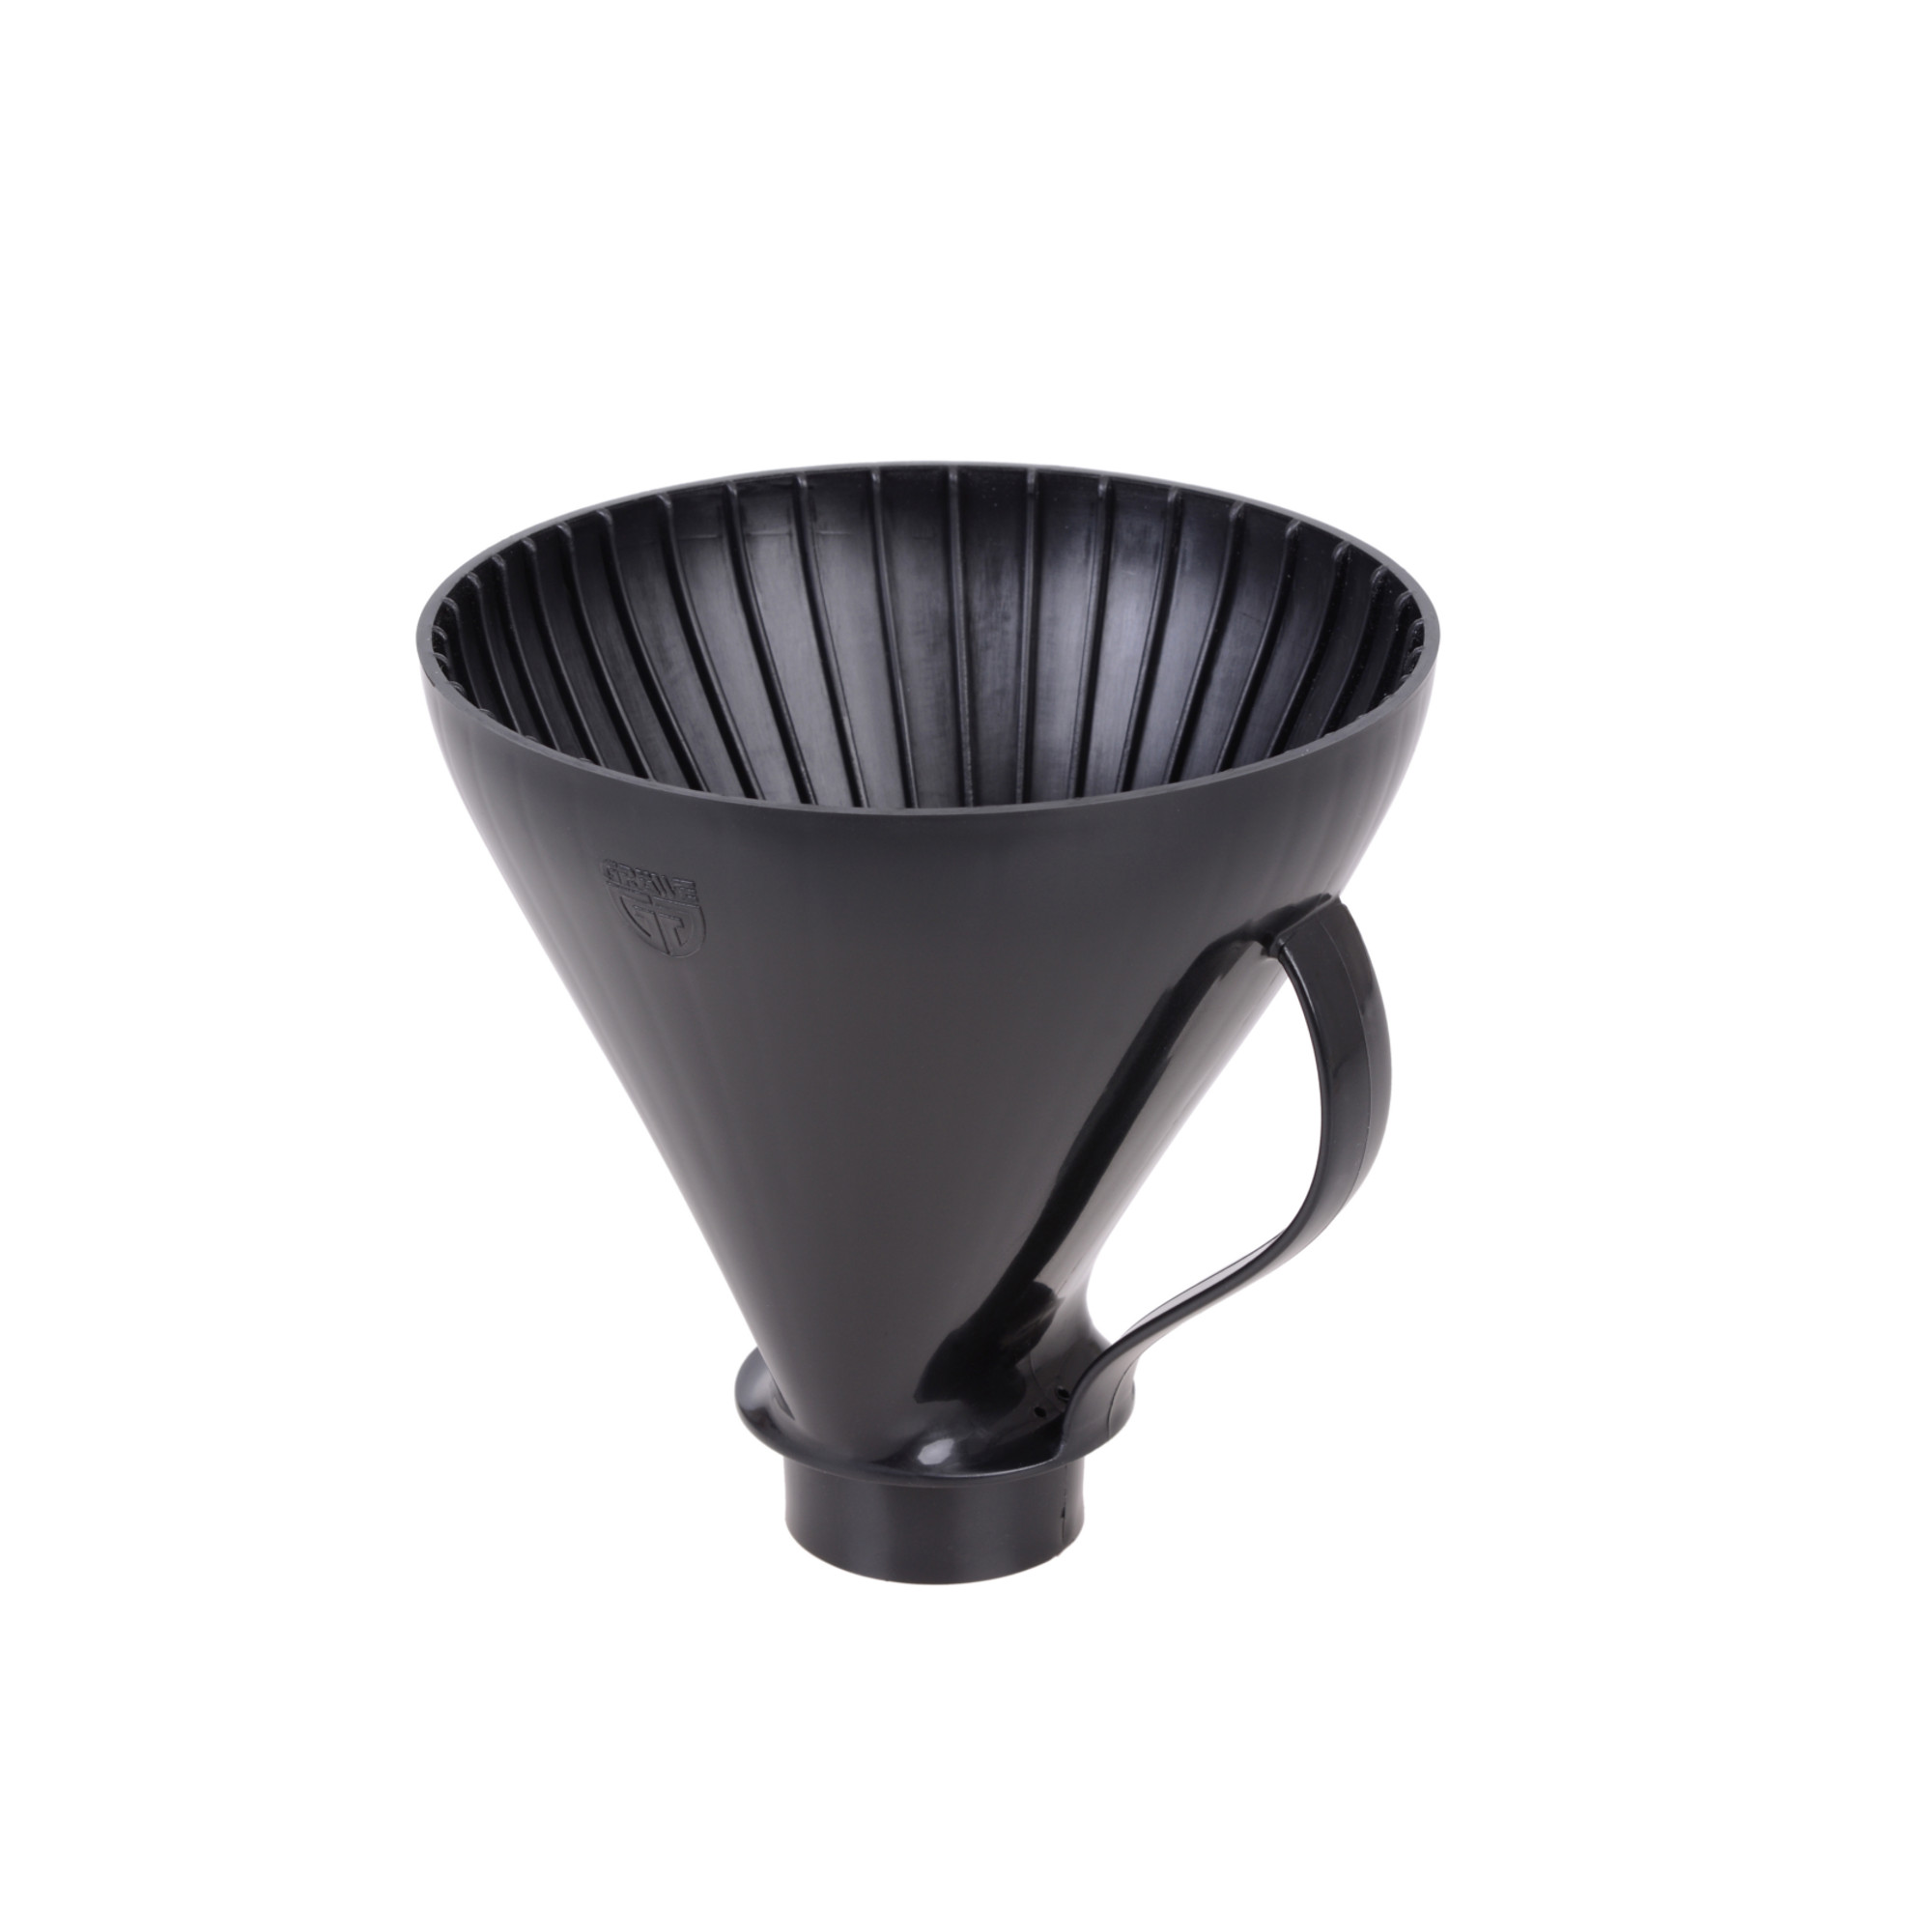 Kaffeefilteraufsatz für Isolierkannen aus Kunststoff schwarz